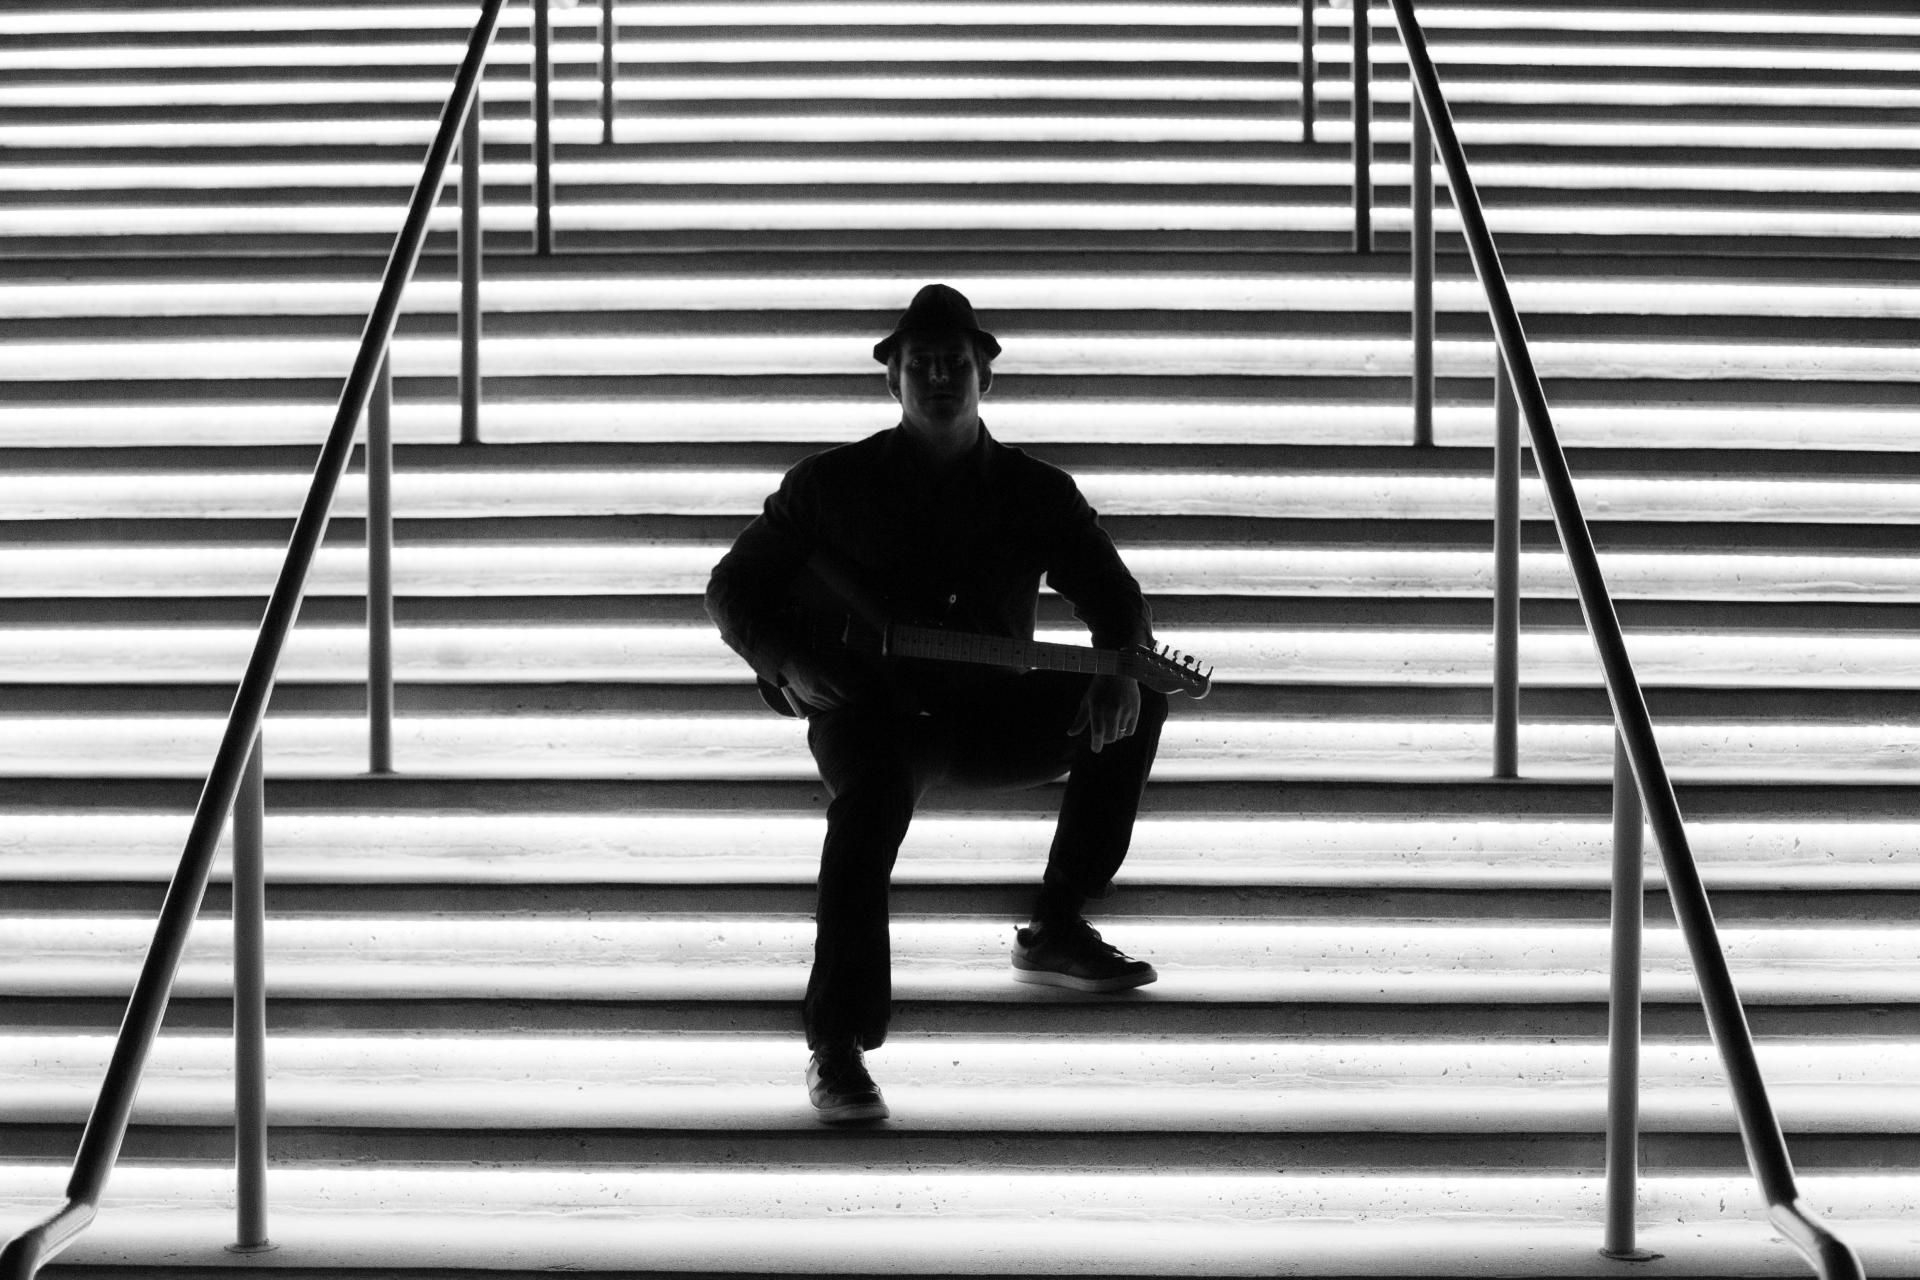 Ryan Hiller - Black and White - Illuminated Stairs